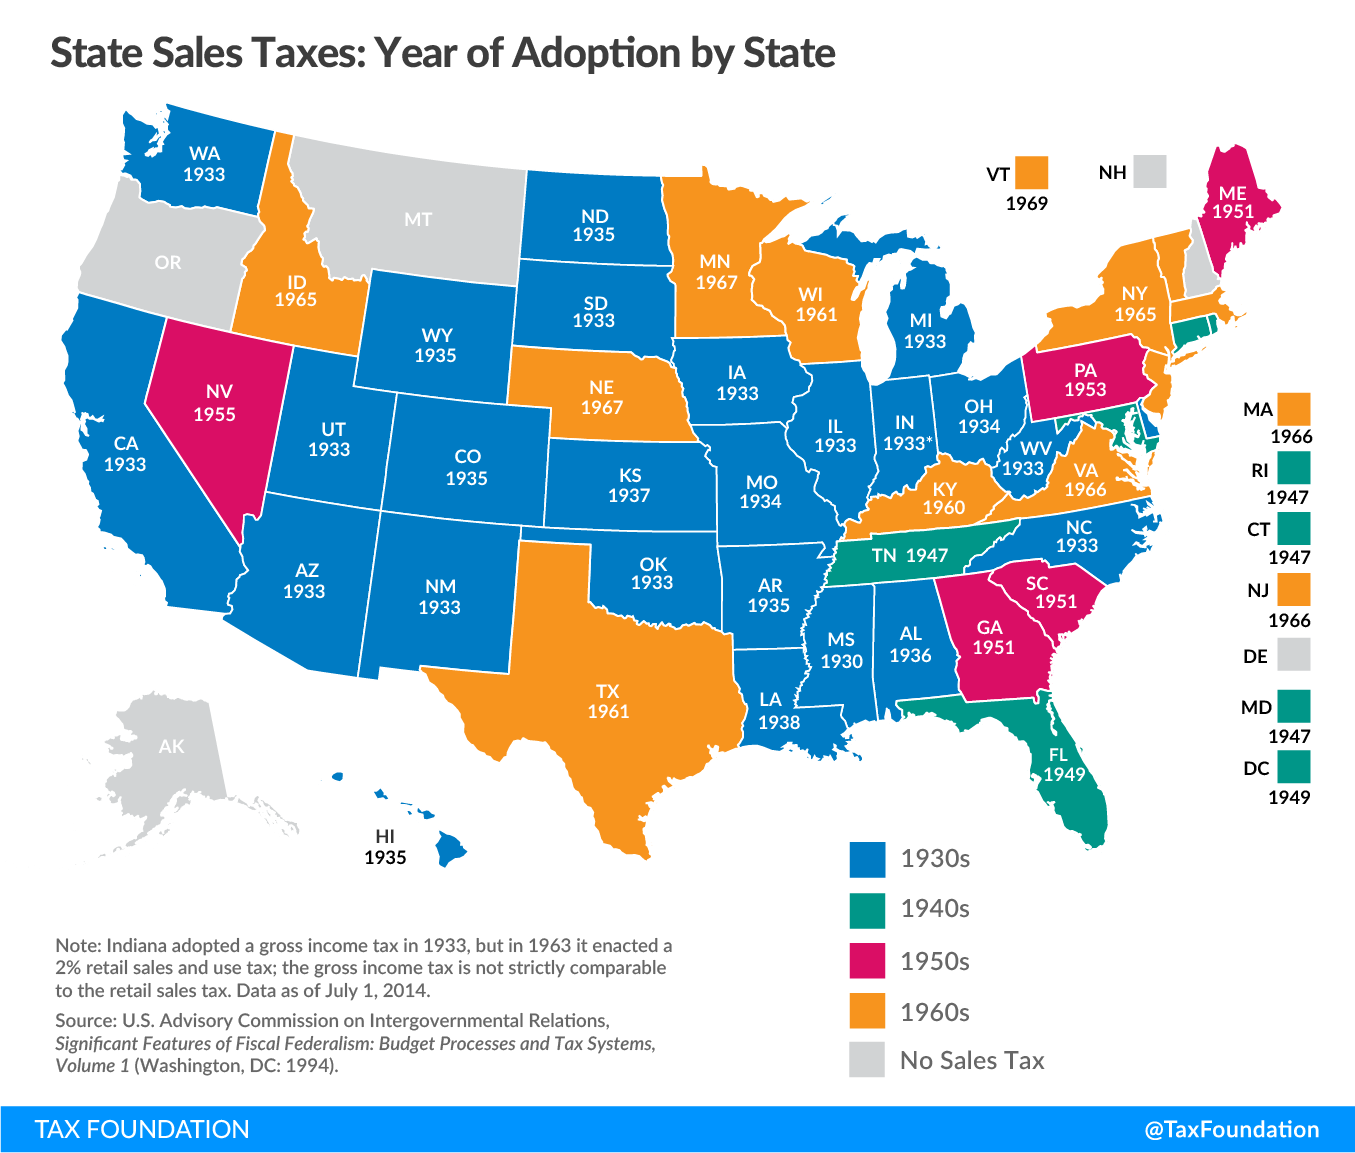 Utah sales tax proposal 2019 UT